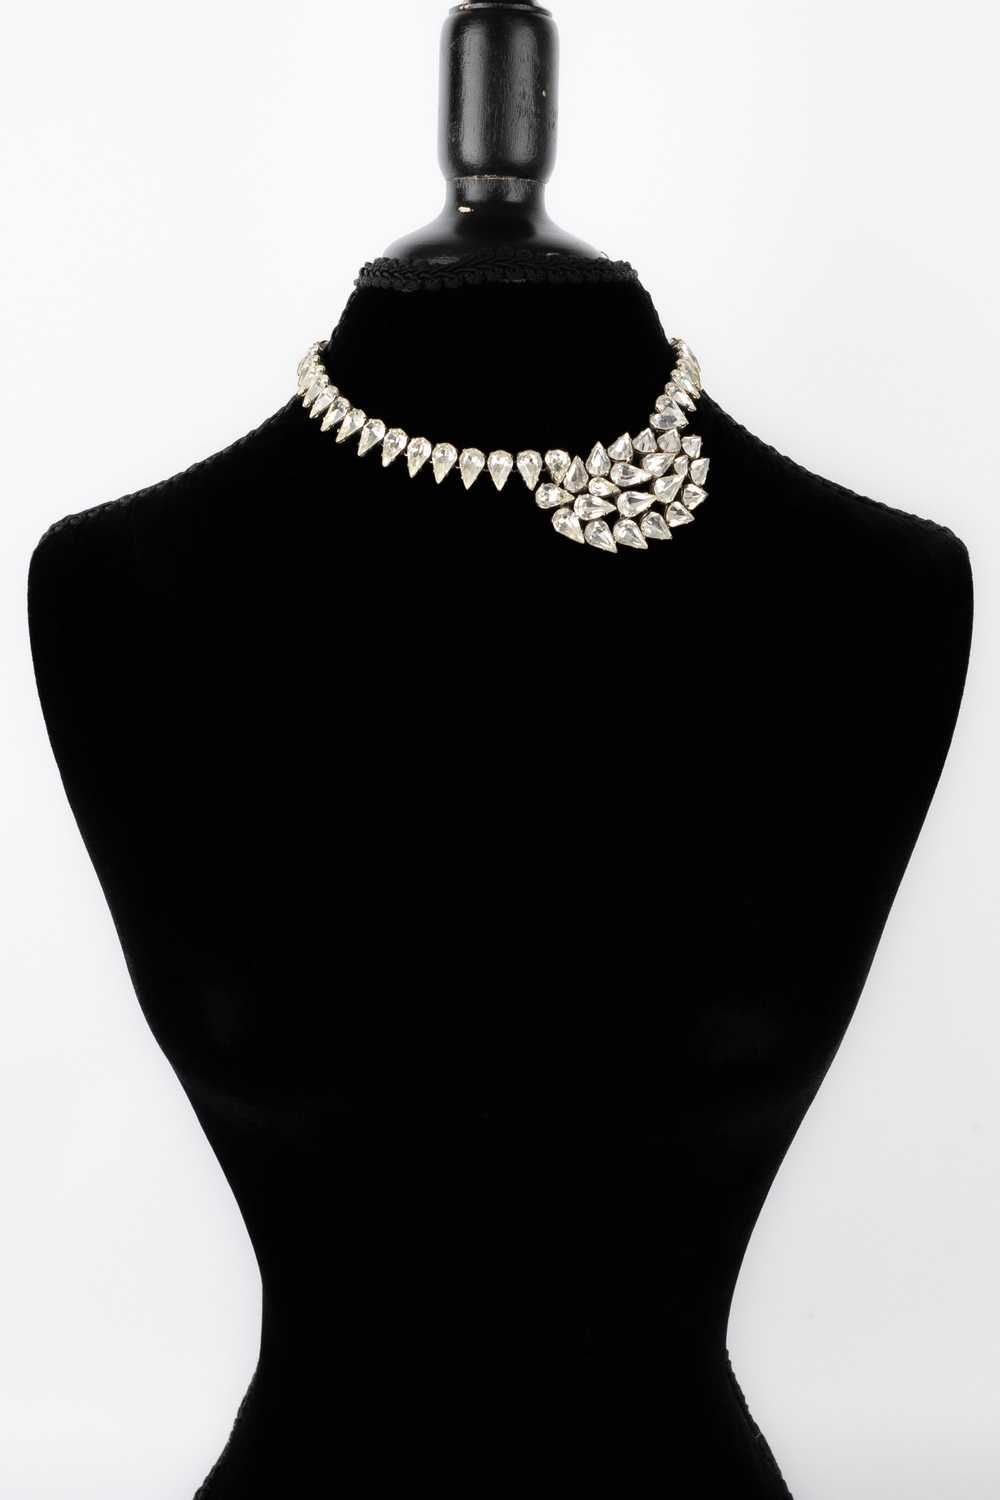 Viintage rhinestoned necklace - image 4